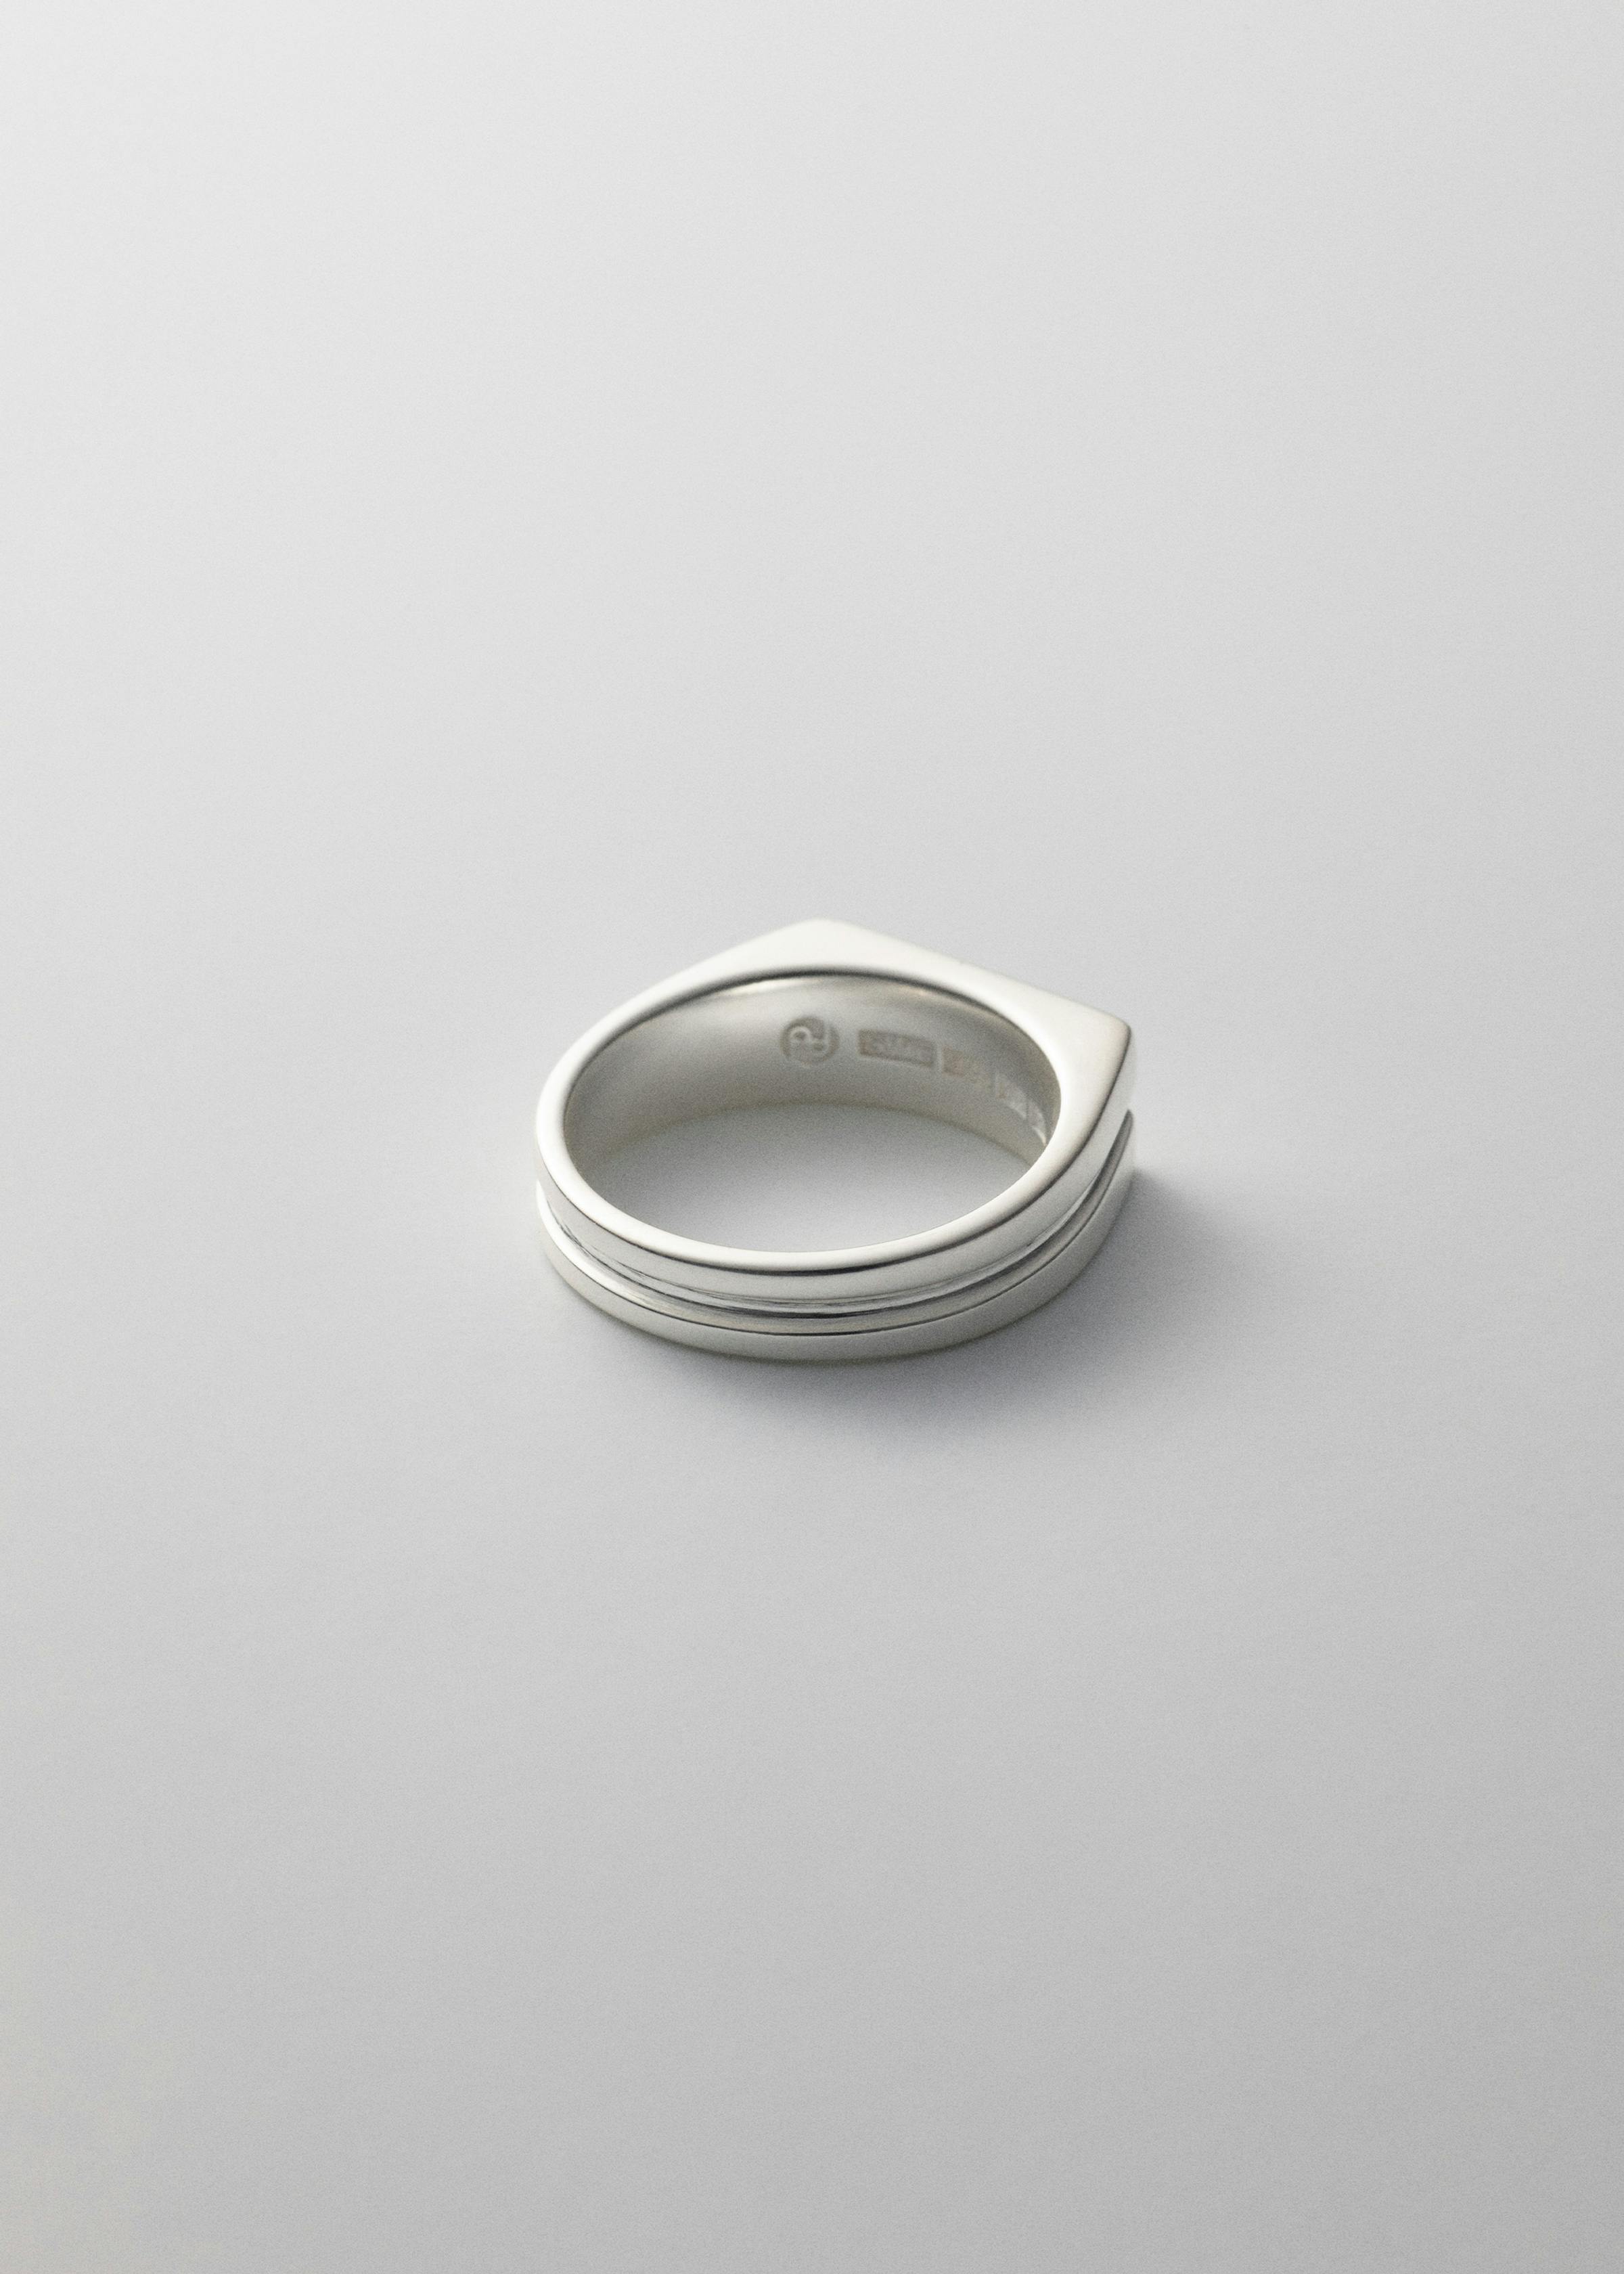 37-805 Sterling Silver Eye Pin, 1-1/2, 0.020 Diameter - Rings & Things